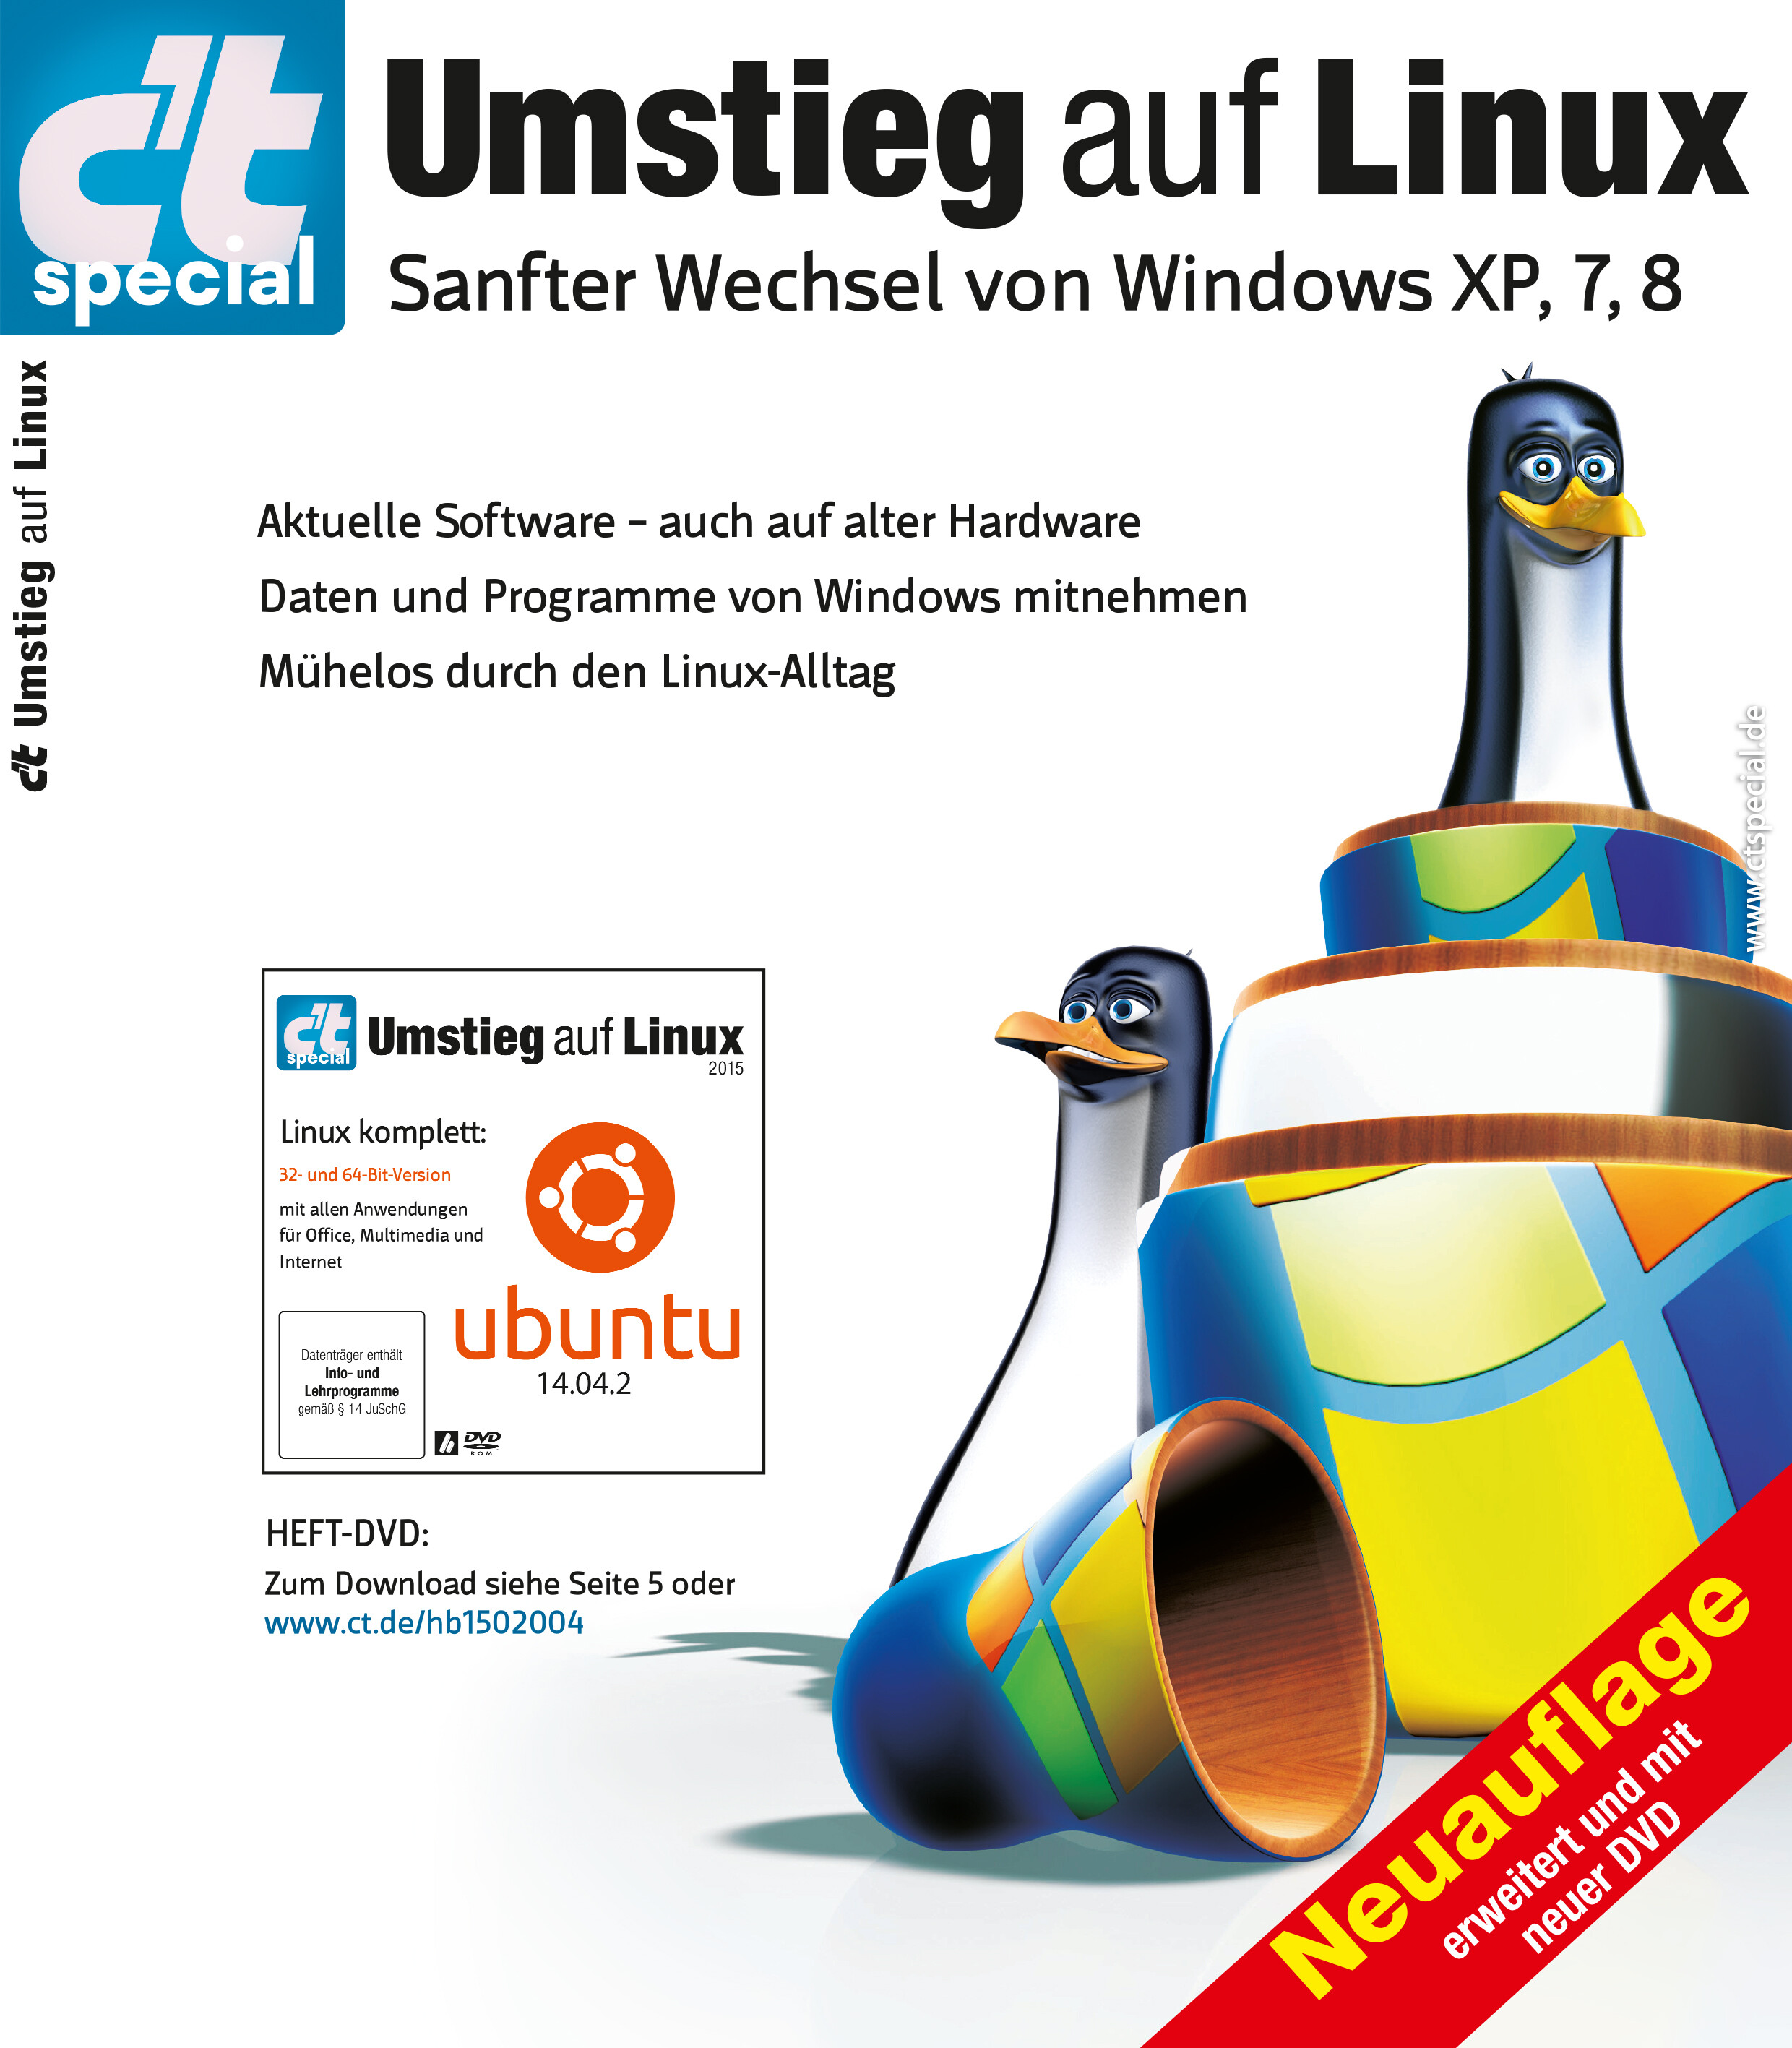 c't special Umstieg auf Linux 2015